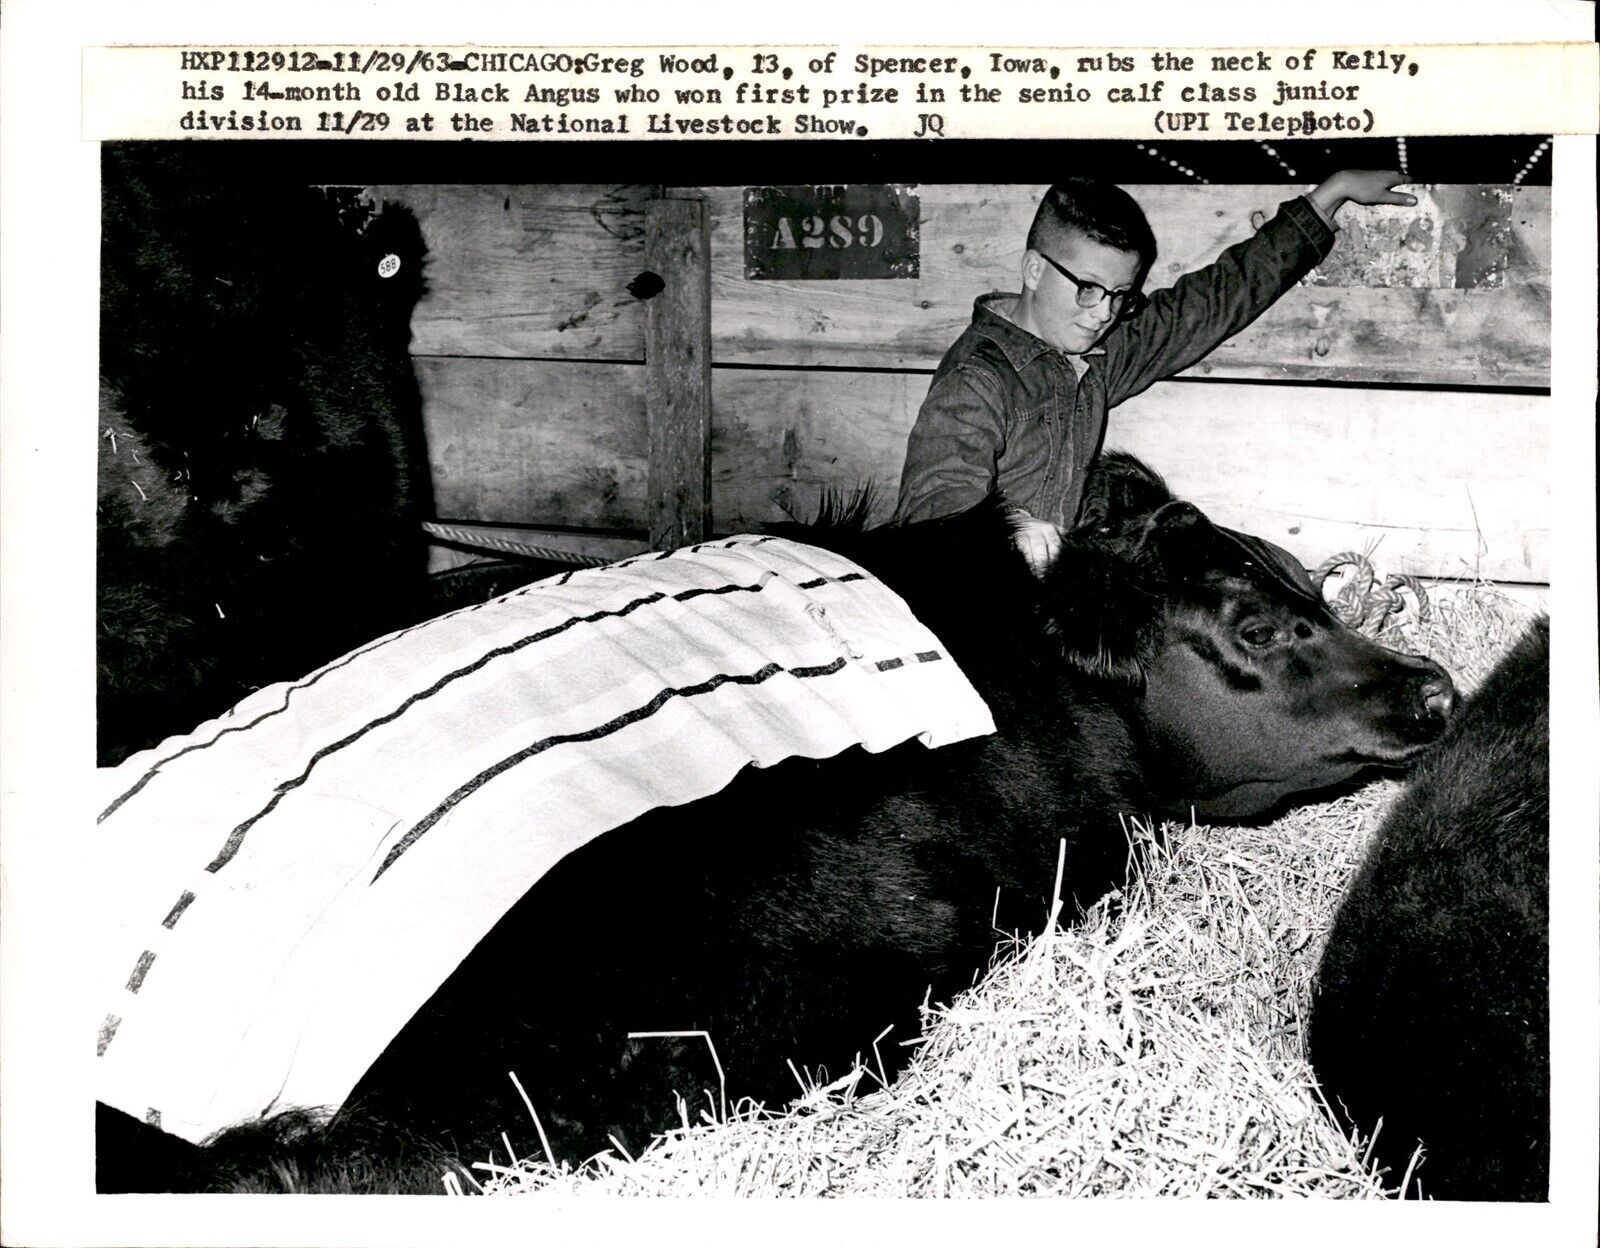 LD343 1963 Original Photo NATIONAL LIVESTOCK SHOW FIRST PRIZE BLACK ANGUS COW